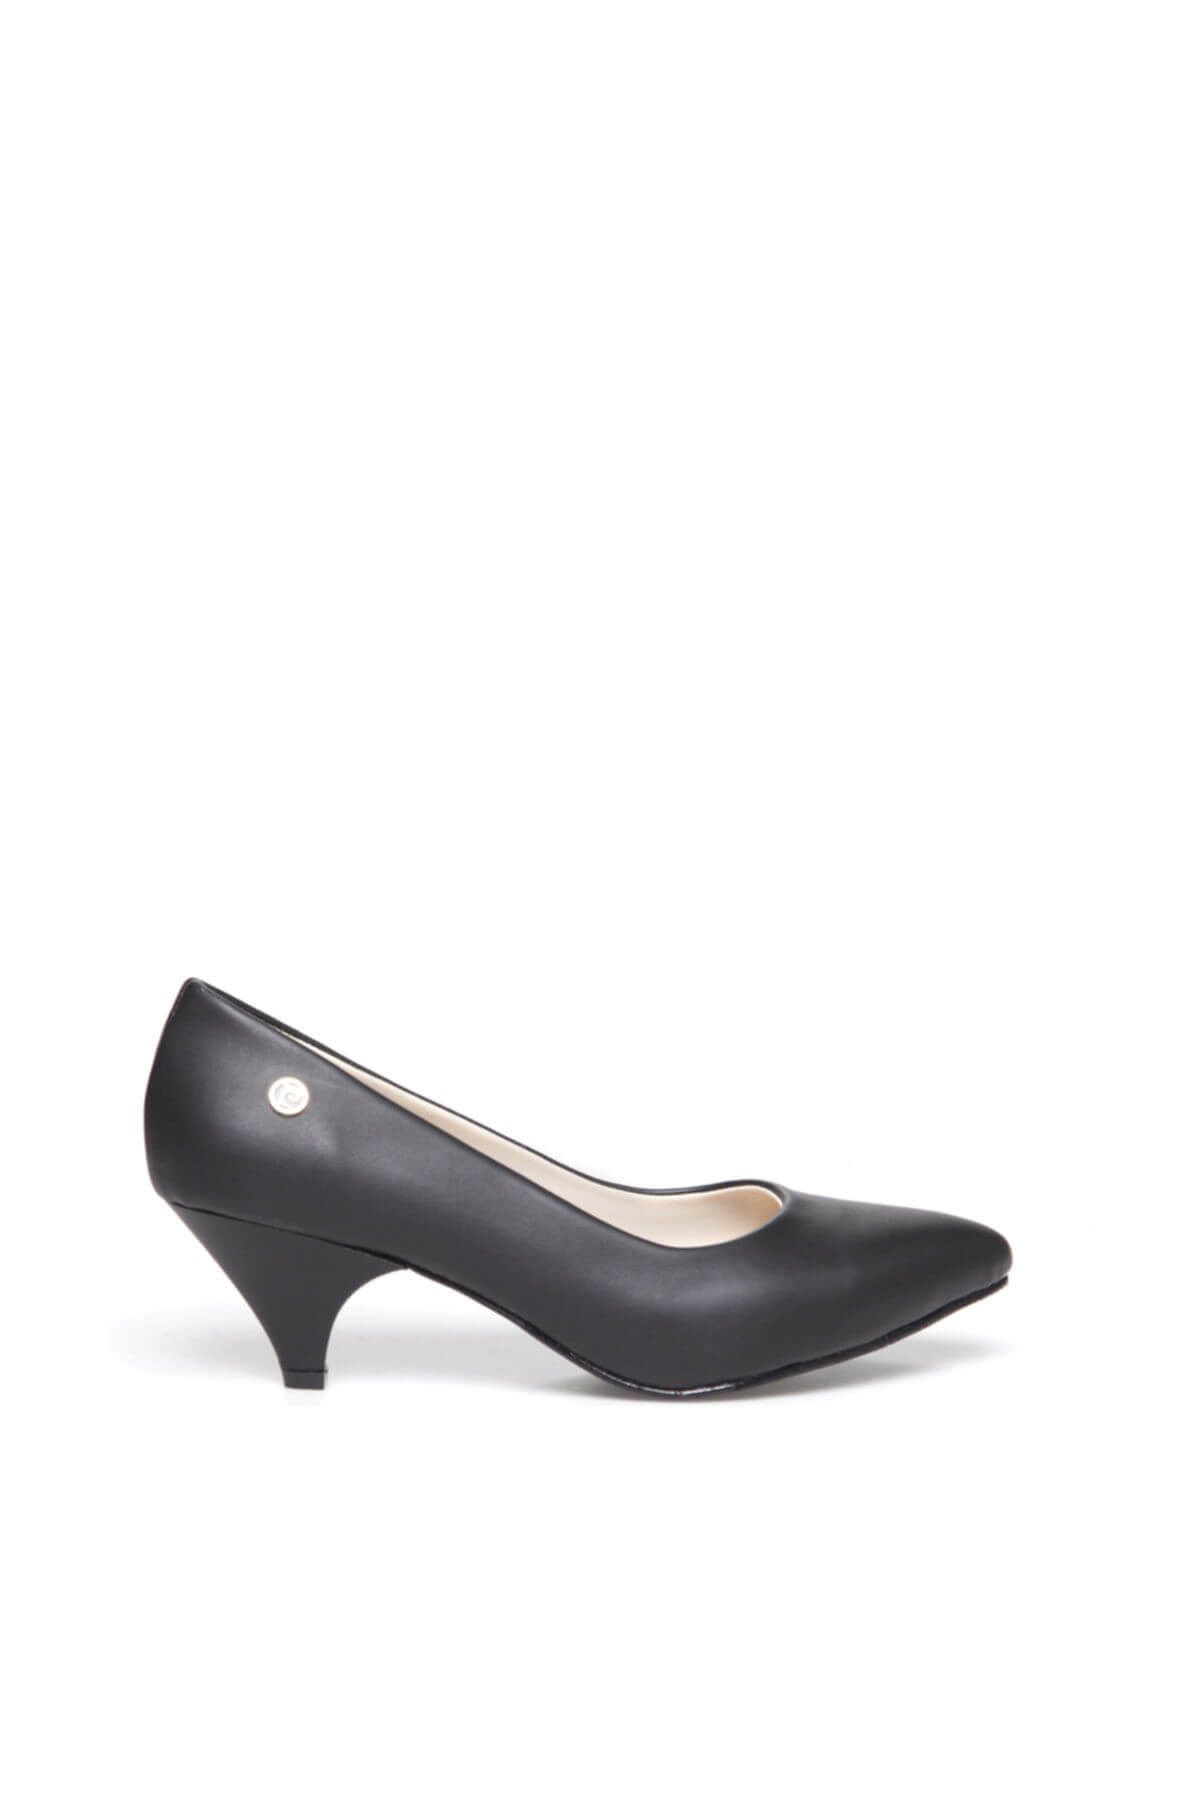 Pierre Cardin Siyah Kadın Topuklu Ayakkabı 91103